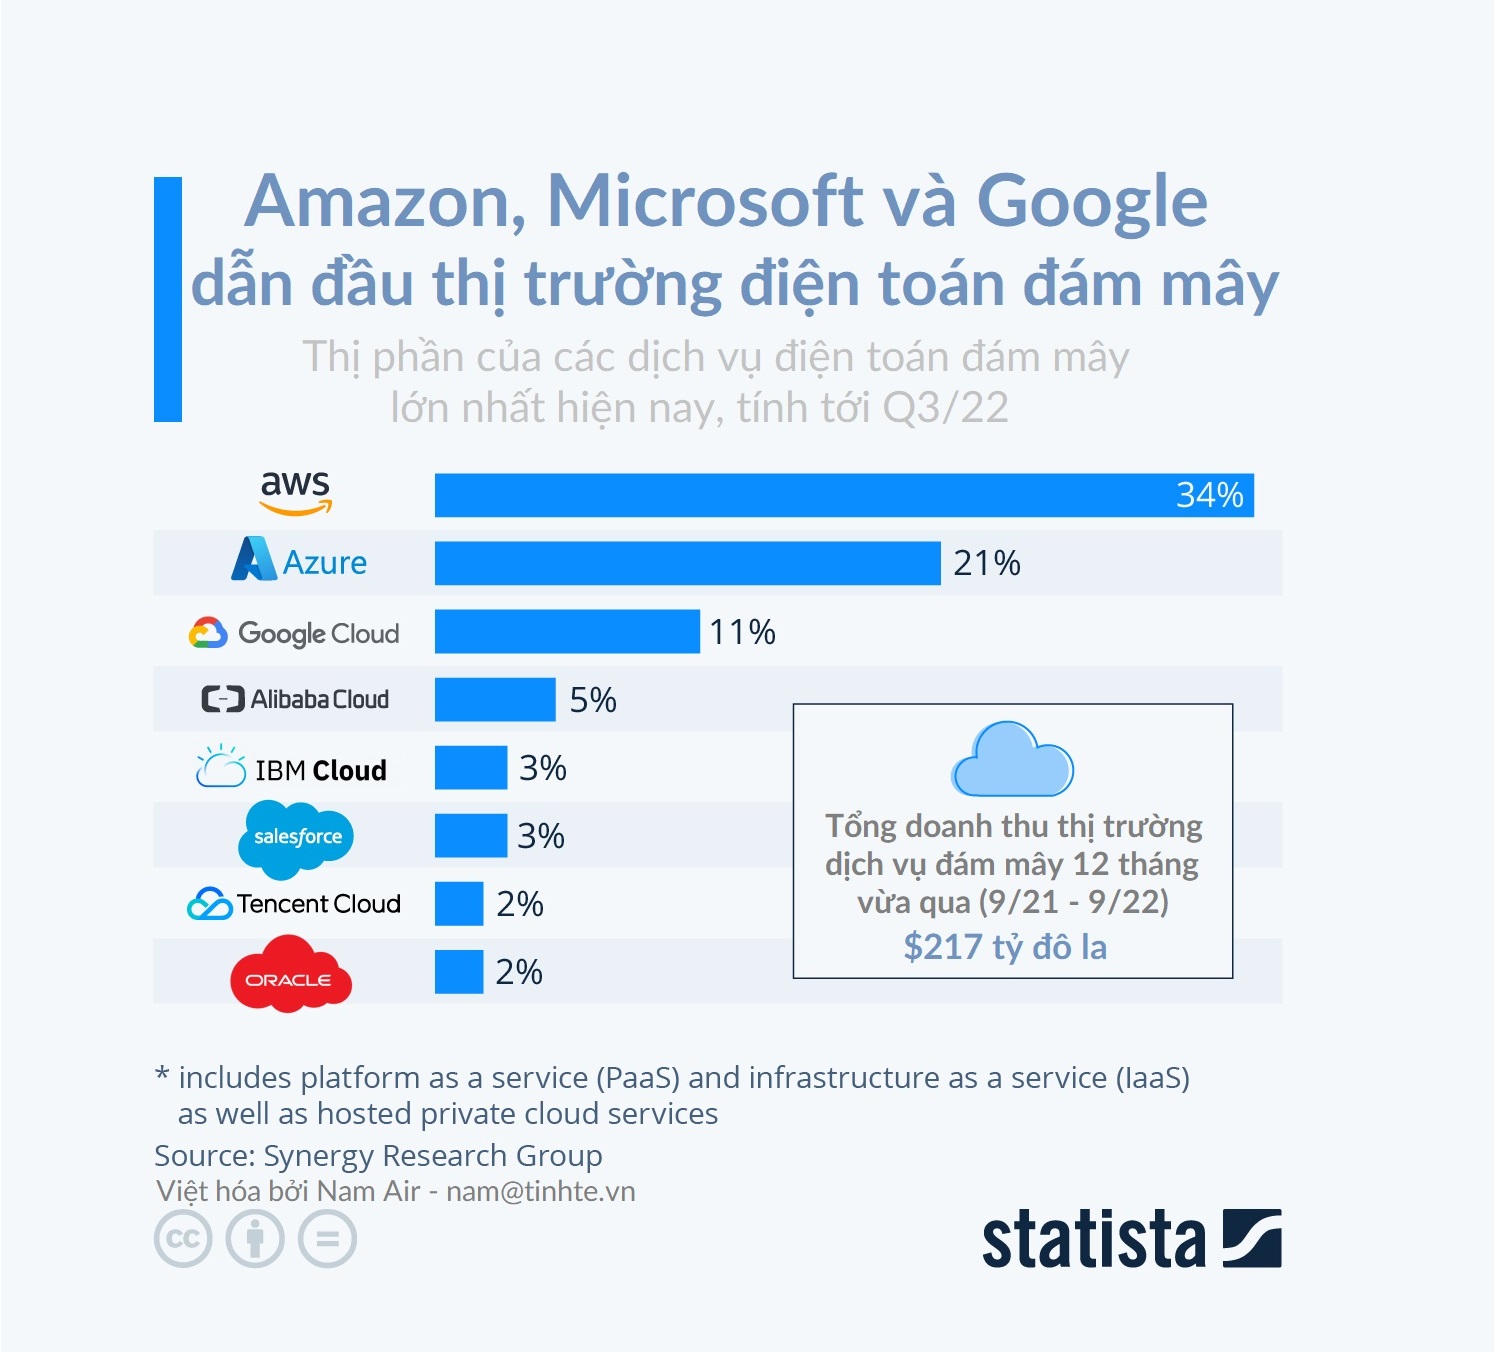 Q3/22: AWS chiếm 34% thị phần điện toán đám mây, Azure 21%, Google Cloud 11%